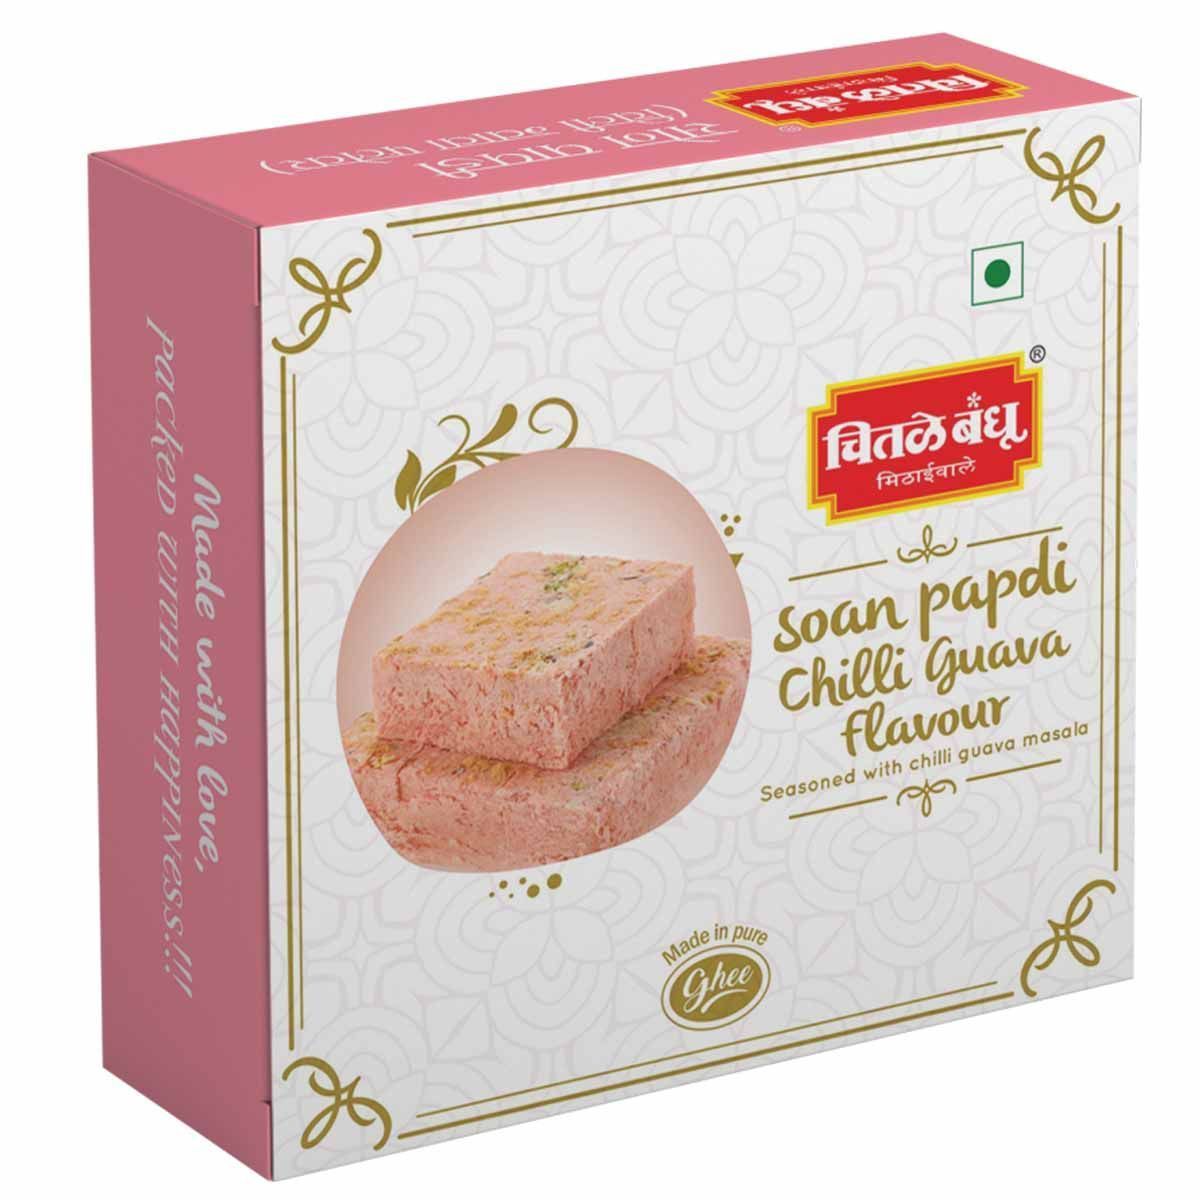 Soan Papdi Chilli Guava Flavour